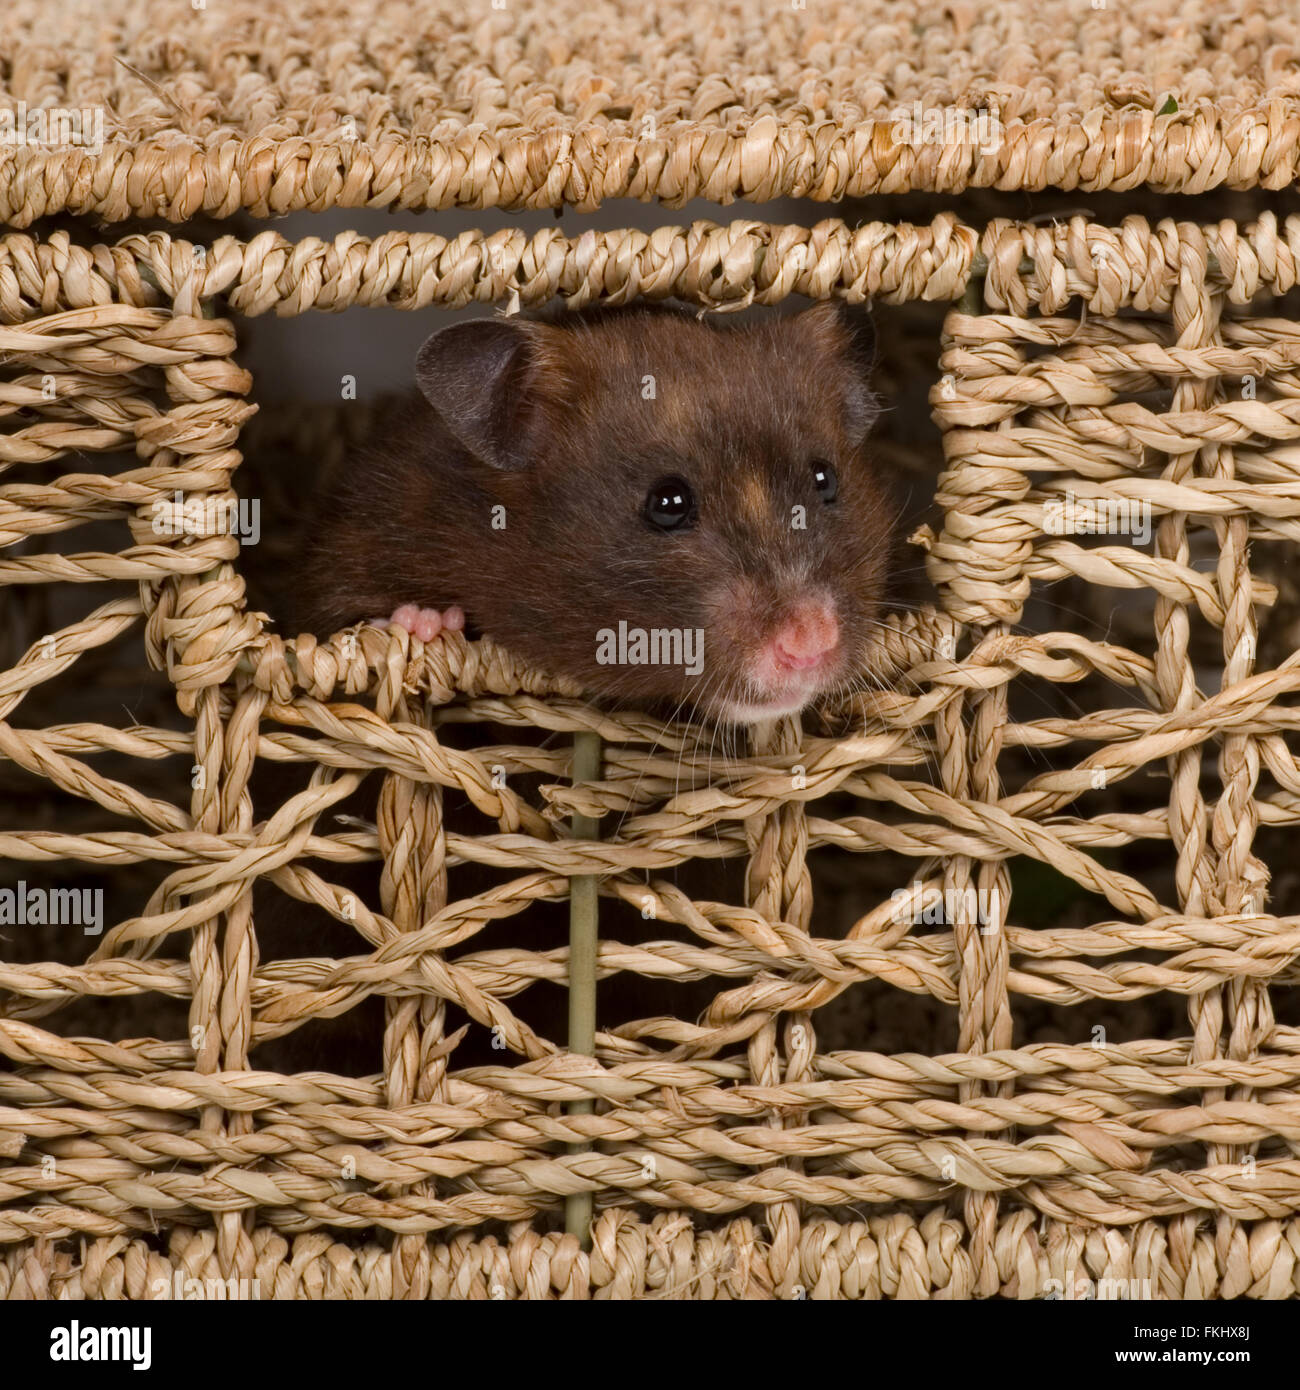 Hamster in basket Stock Photo